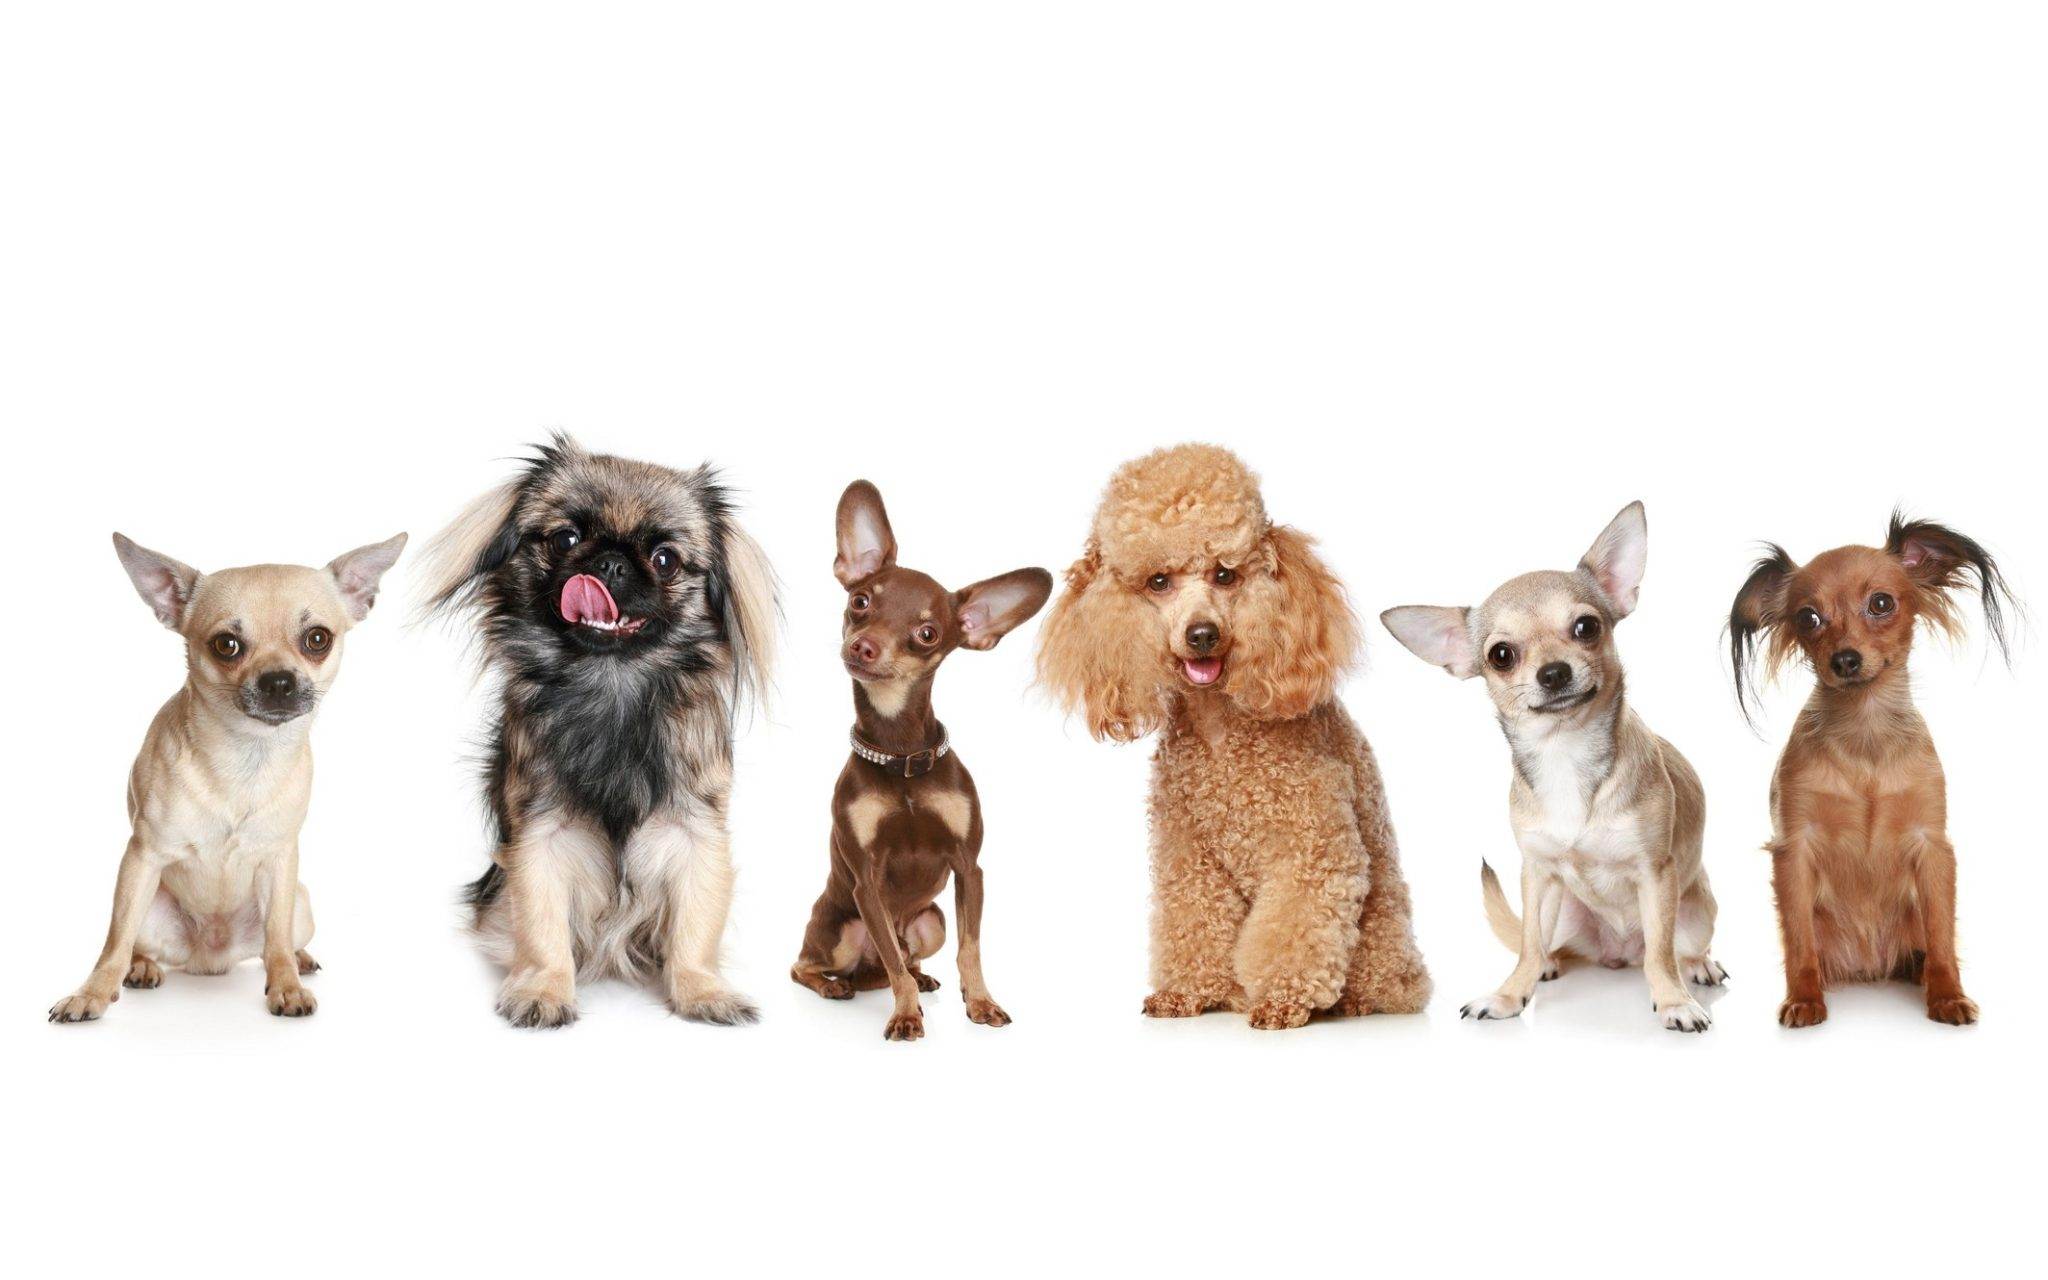 Породы маленьких собак с фото и названиями